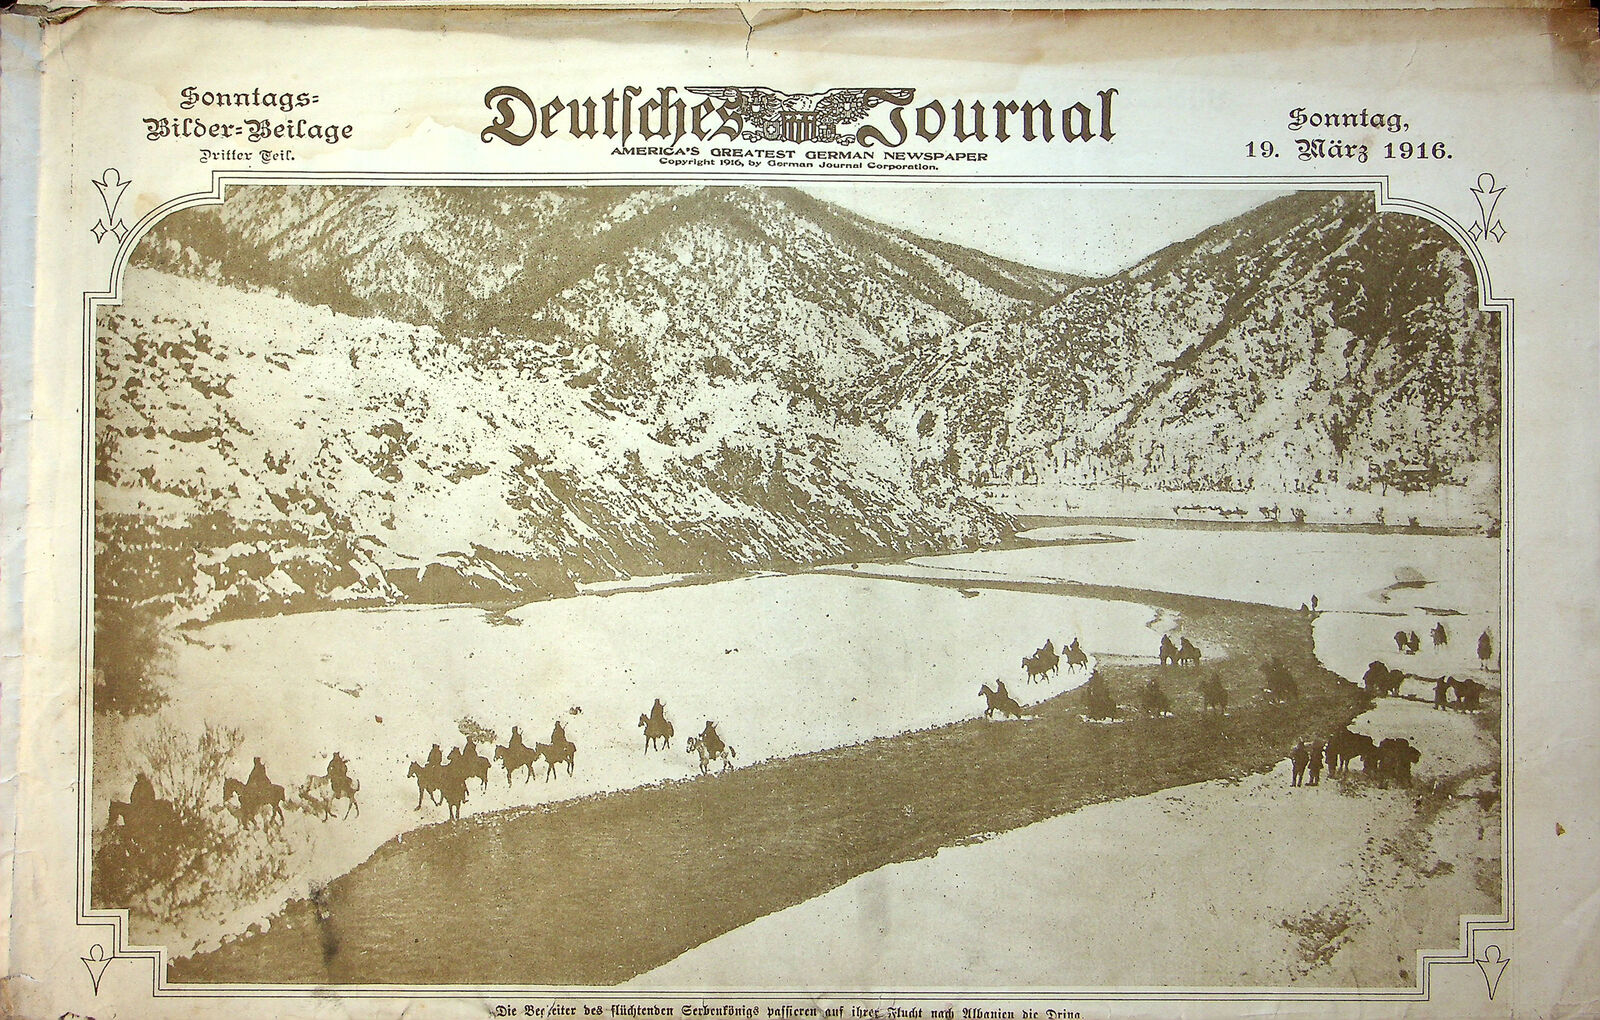 1916 Deutfches Journal German American Newspaper March 19 Serbian Retreat Y